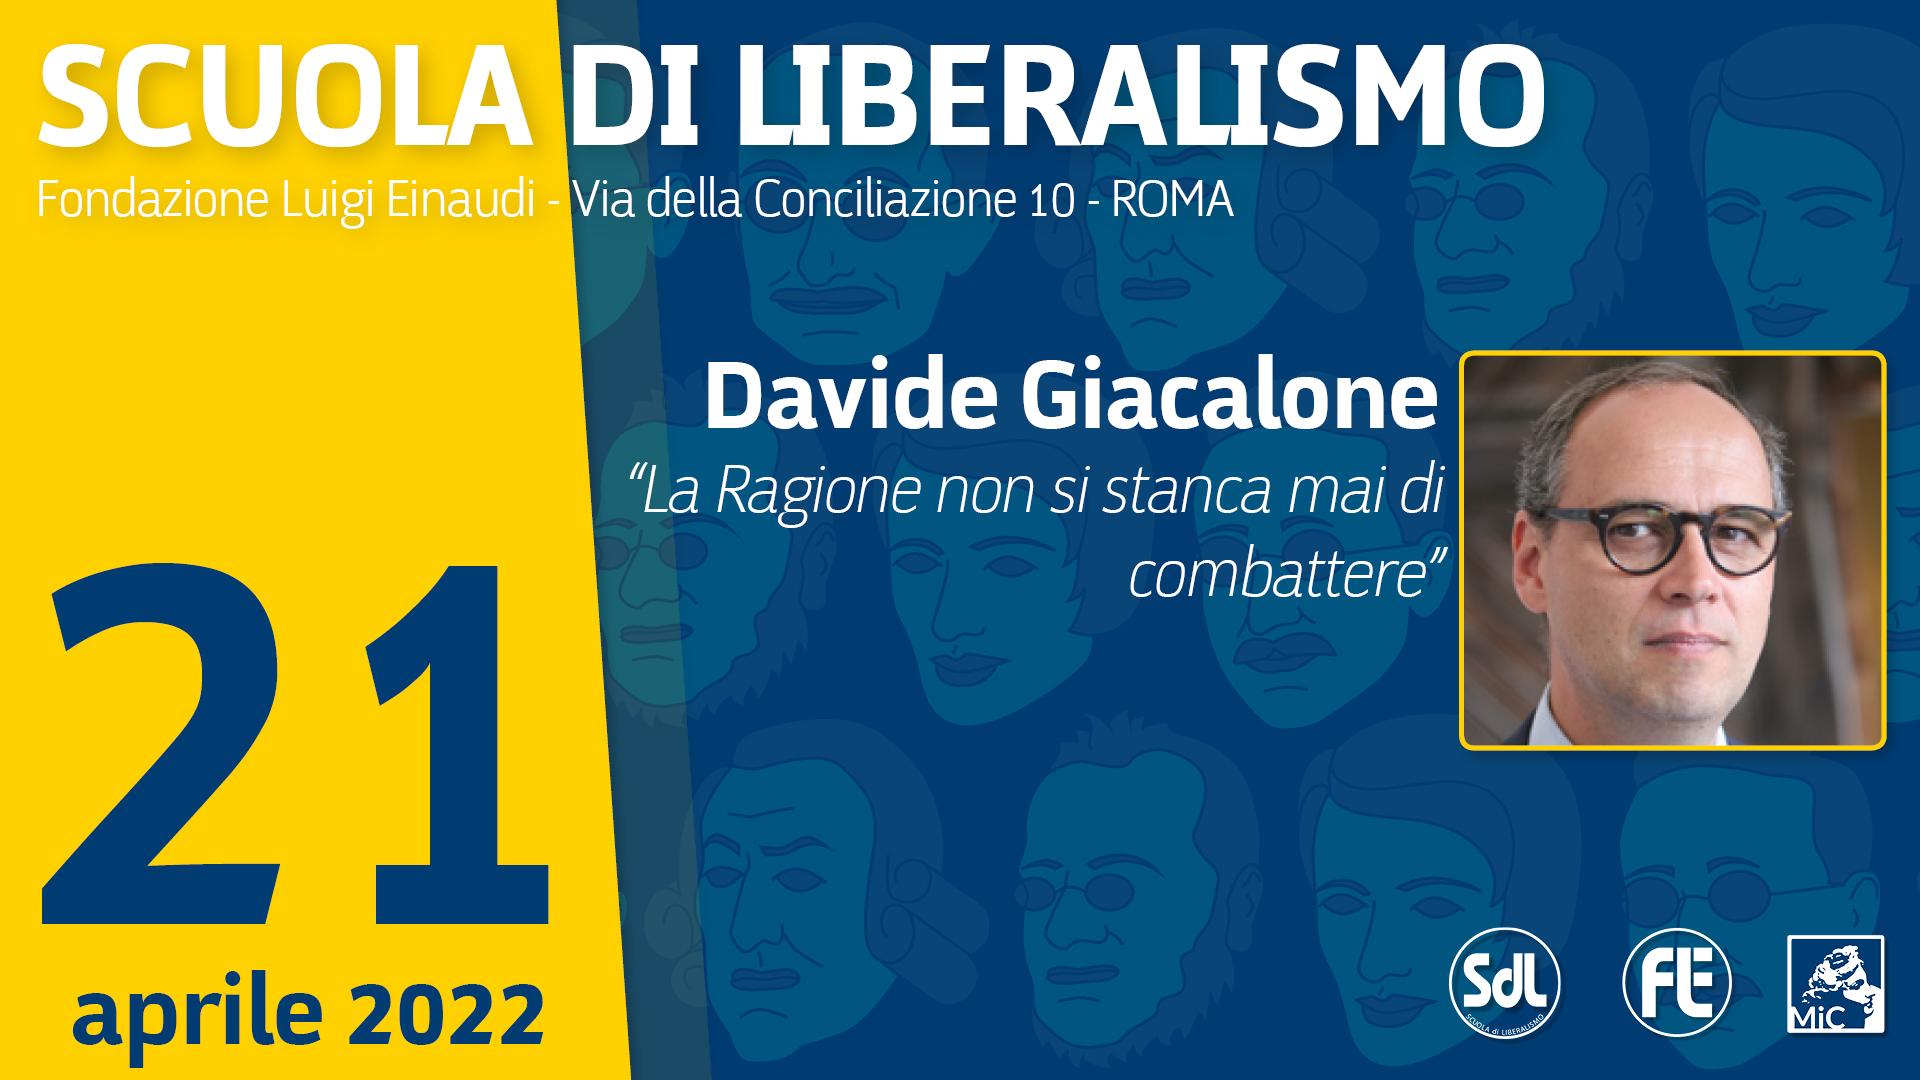 Scuola di Liberalismo 2022 – Davide Giacalone “La Ragione non si stanca mai di combattere”